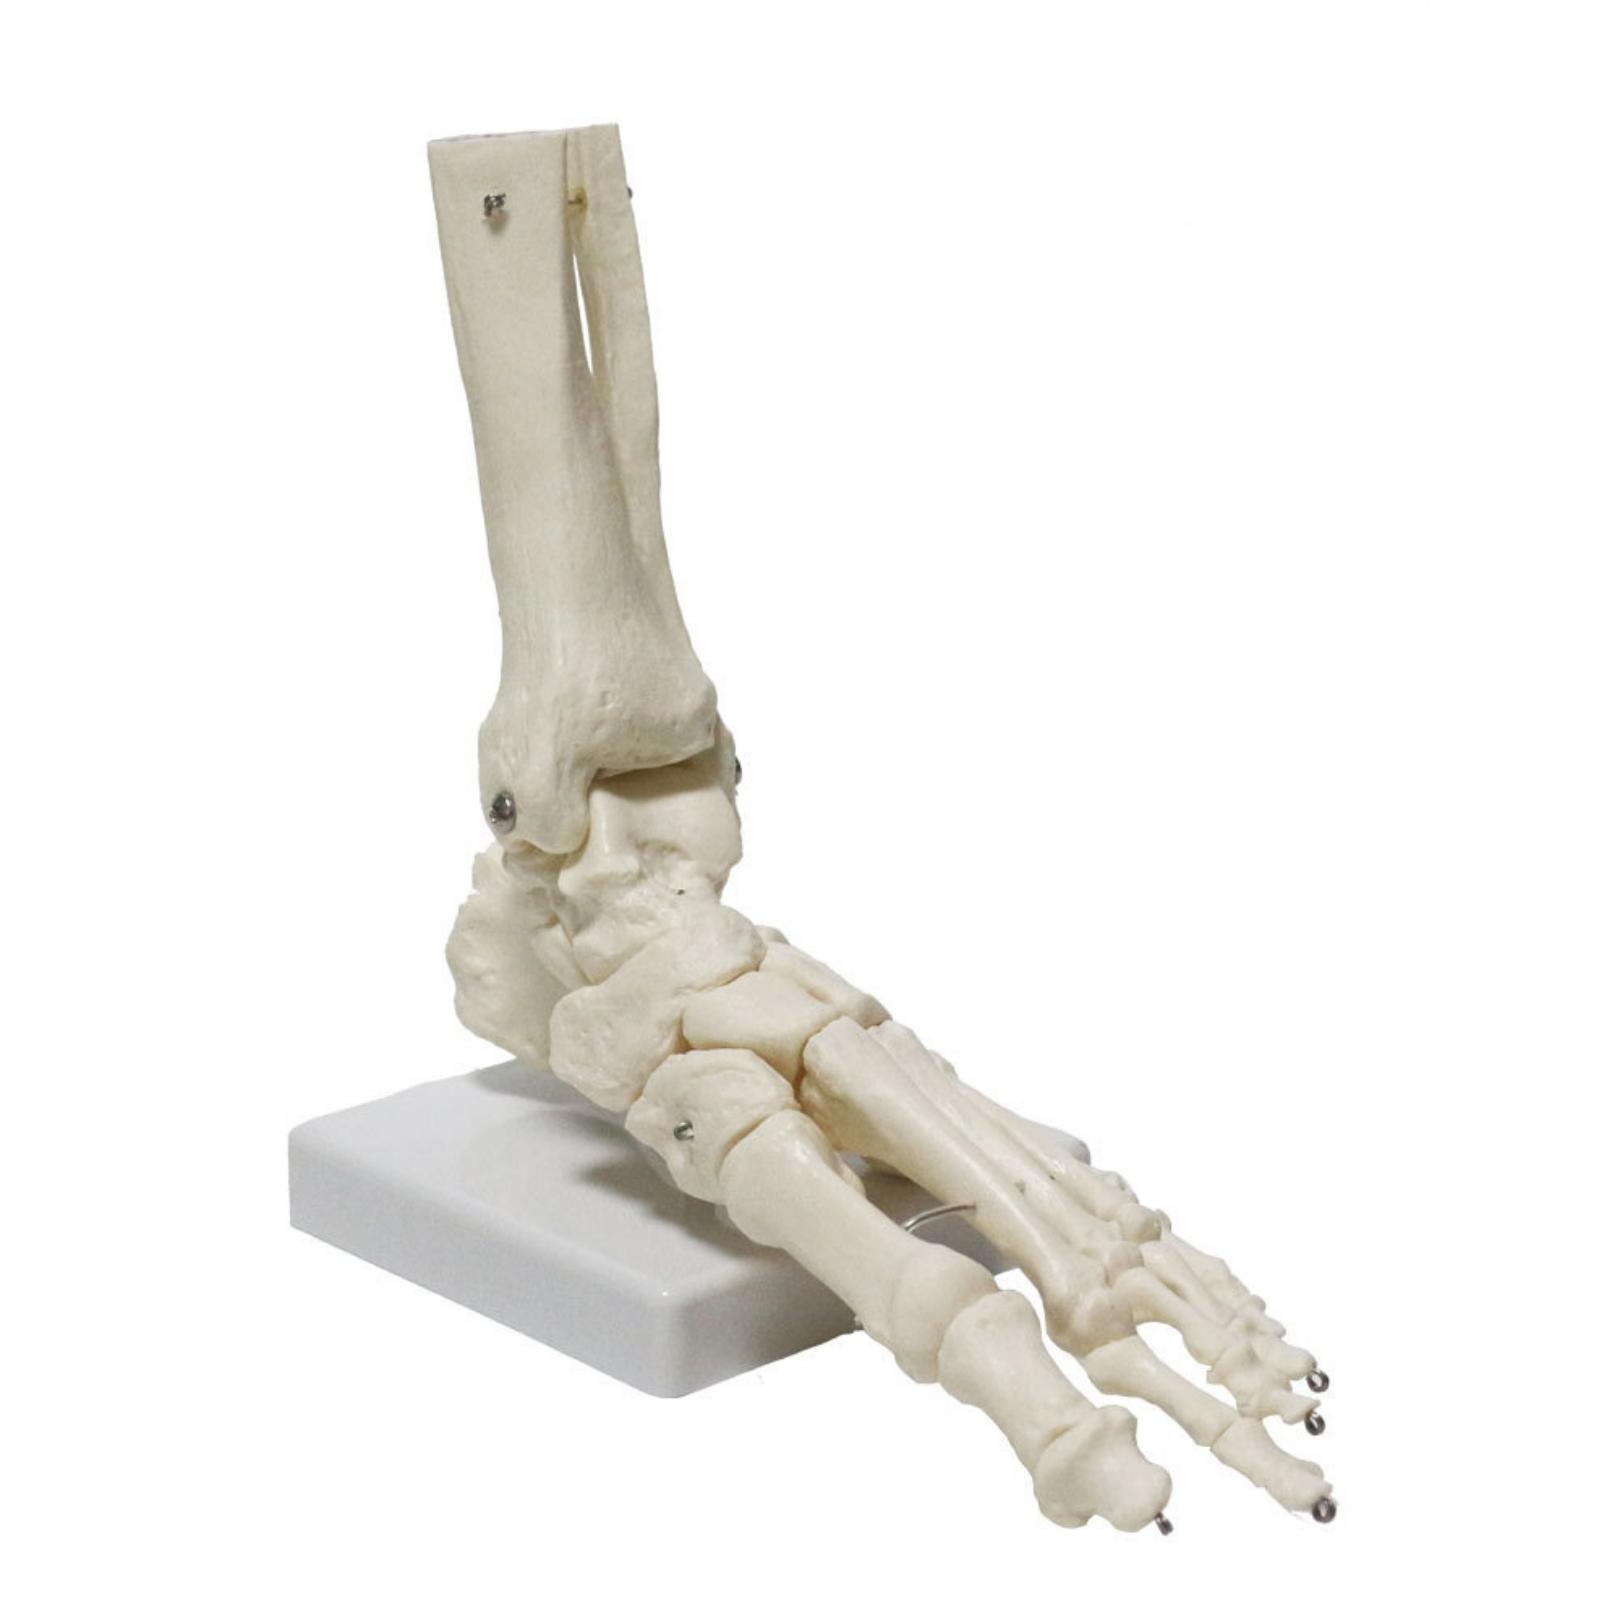 【あす楽】 【送料無料】 sac taske 足 人体模型 骨格標本 足関節 可動 模型 骨 人体 骨格 リハビリ 教材 医学(単品)